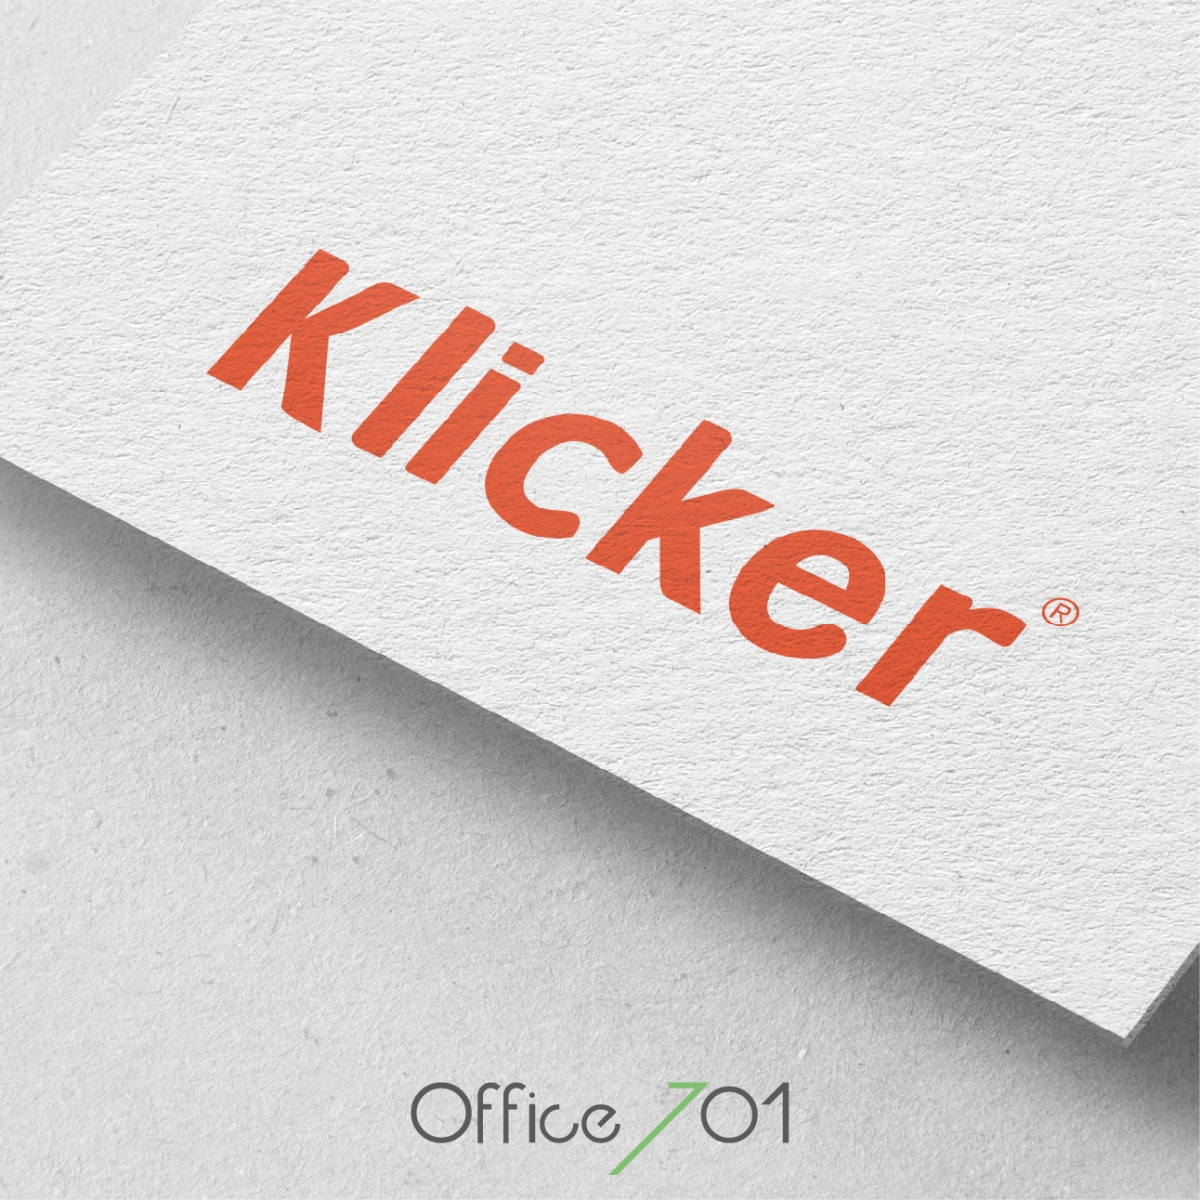 Office701 | Klicker Logo Design